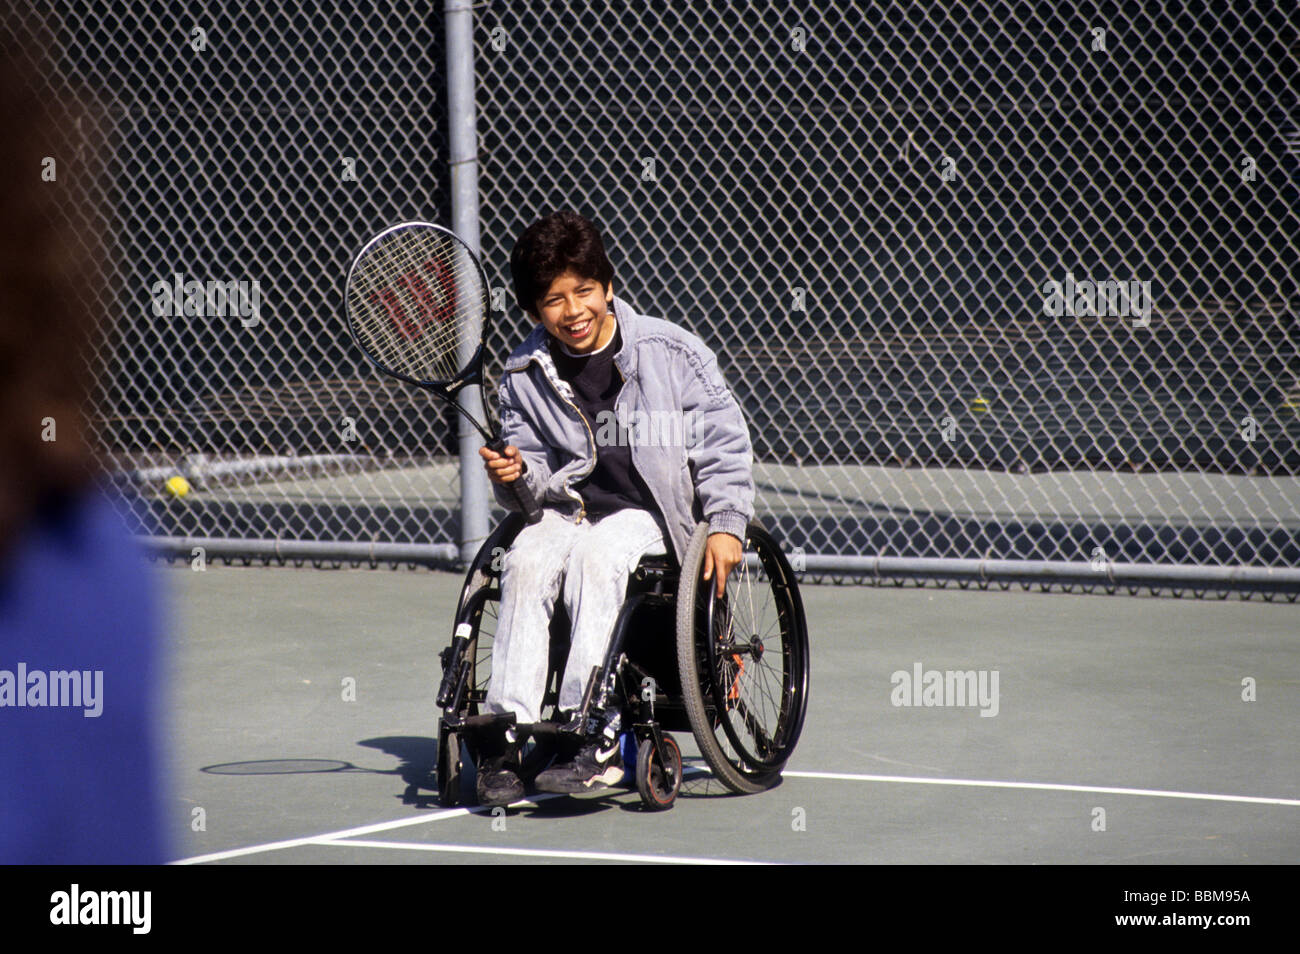 Rollstuhl Rollstuhl Tennis Sport junge Teen Sport Handicap zu überwinden Lächeln glücklich genießen Sie sicher Spaß Stockfoto